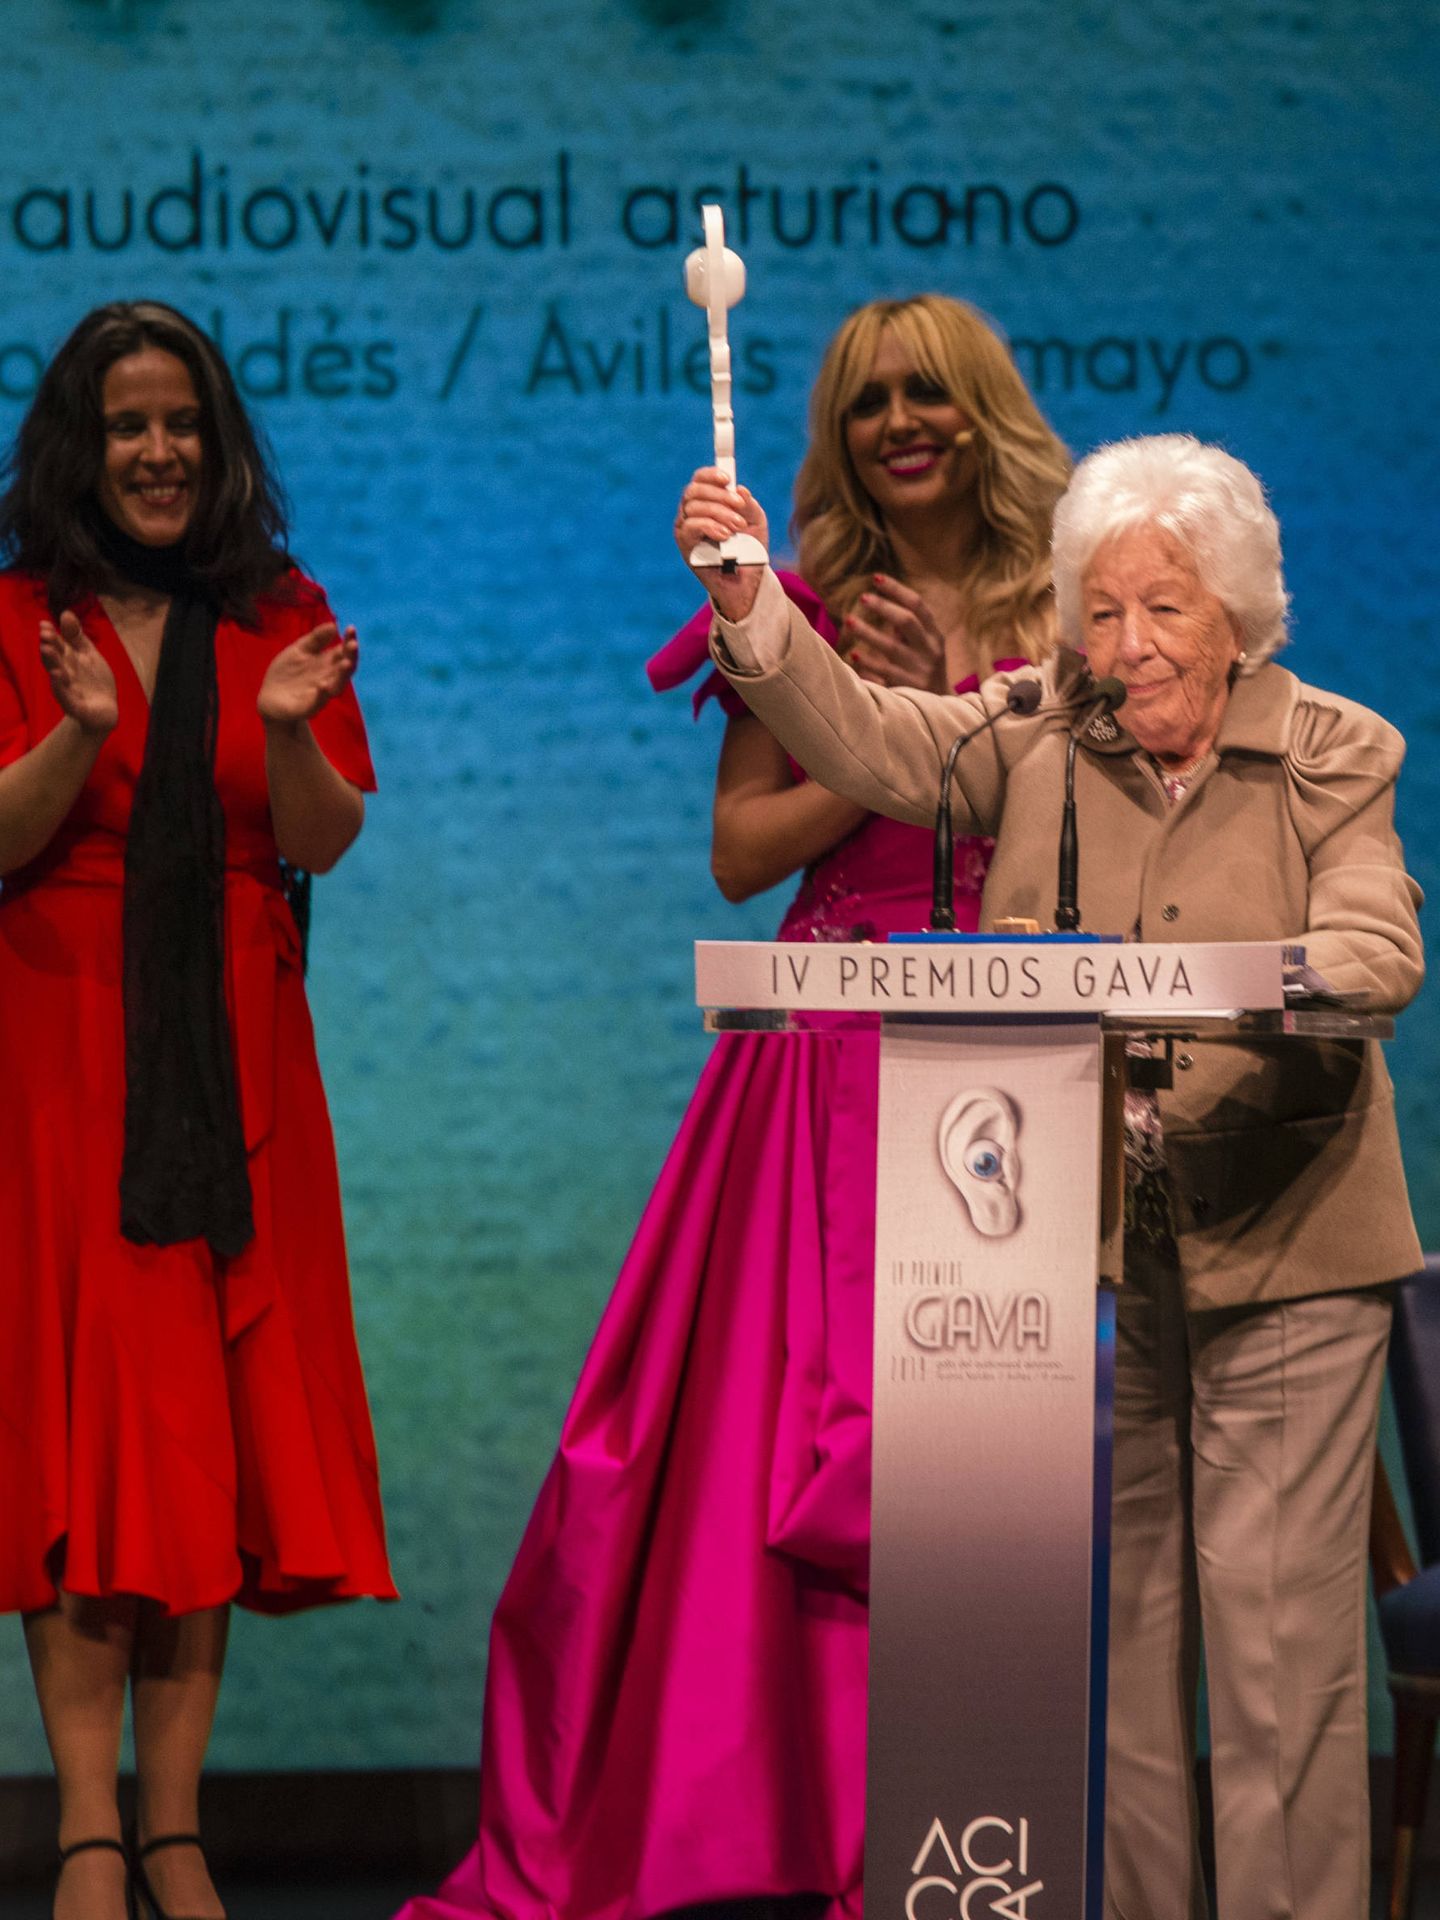 Menchu Álvarez, recogiendo el premio Gavá el pasado mayo. (Lagencia Grosby)